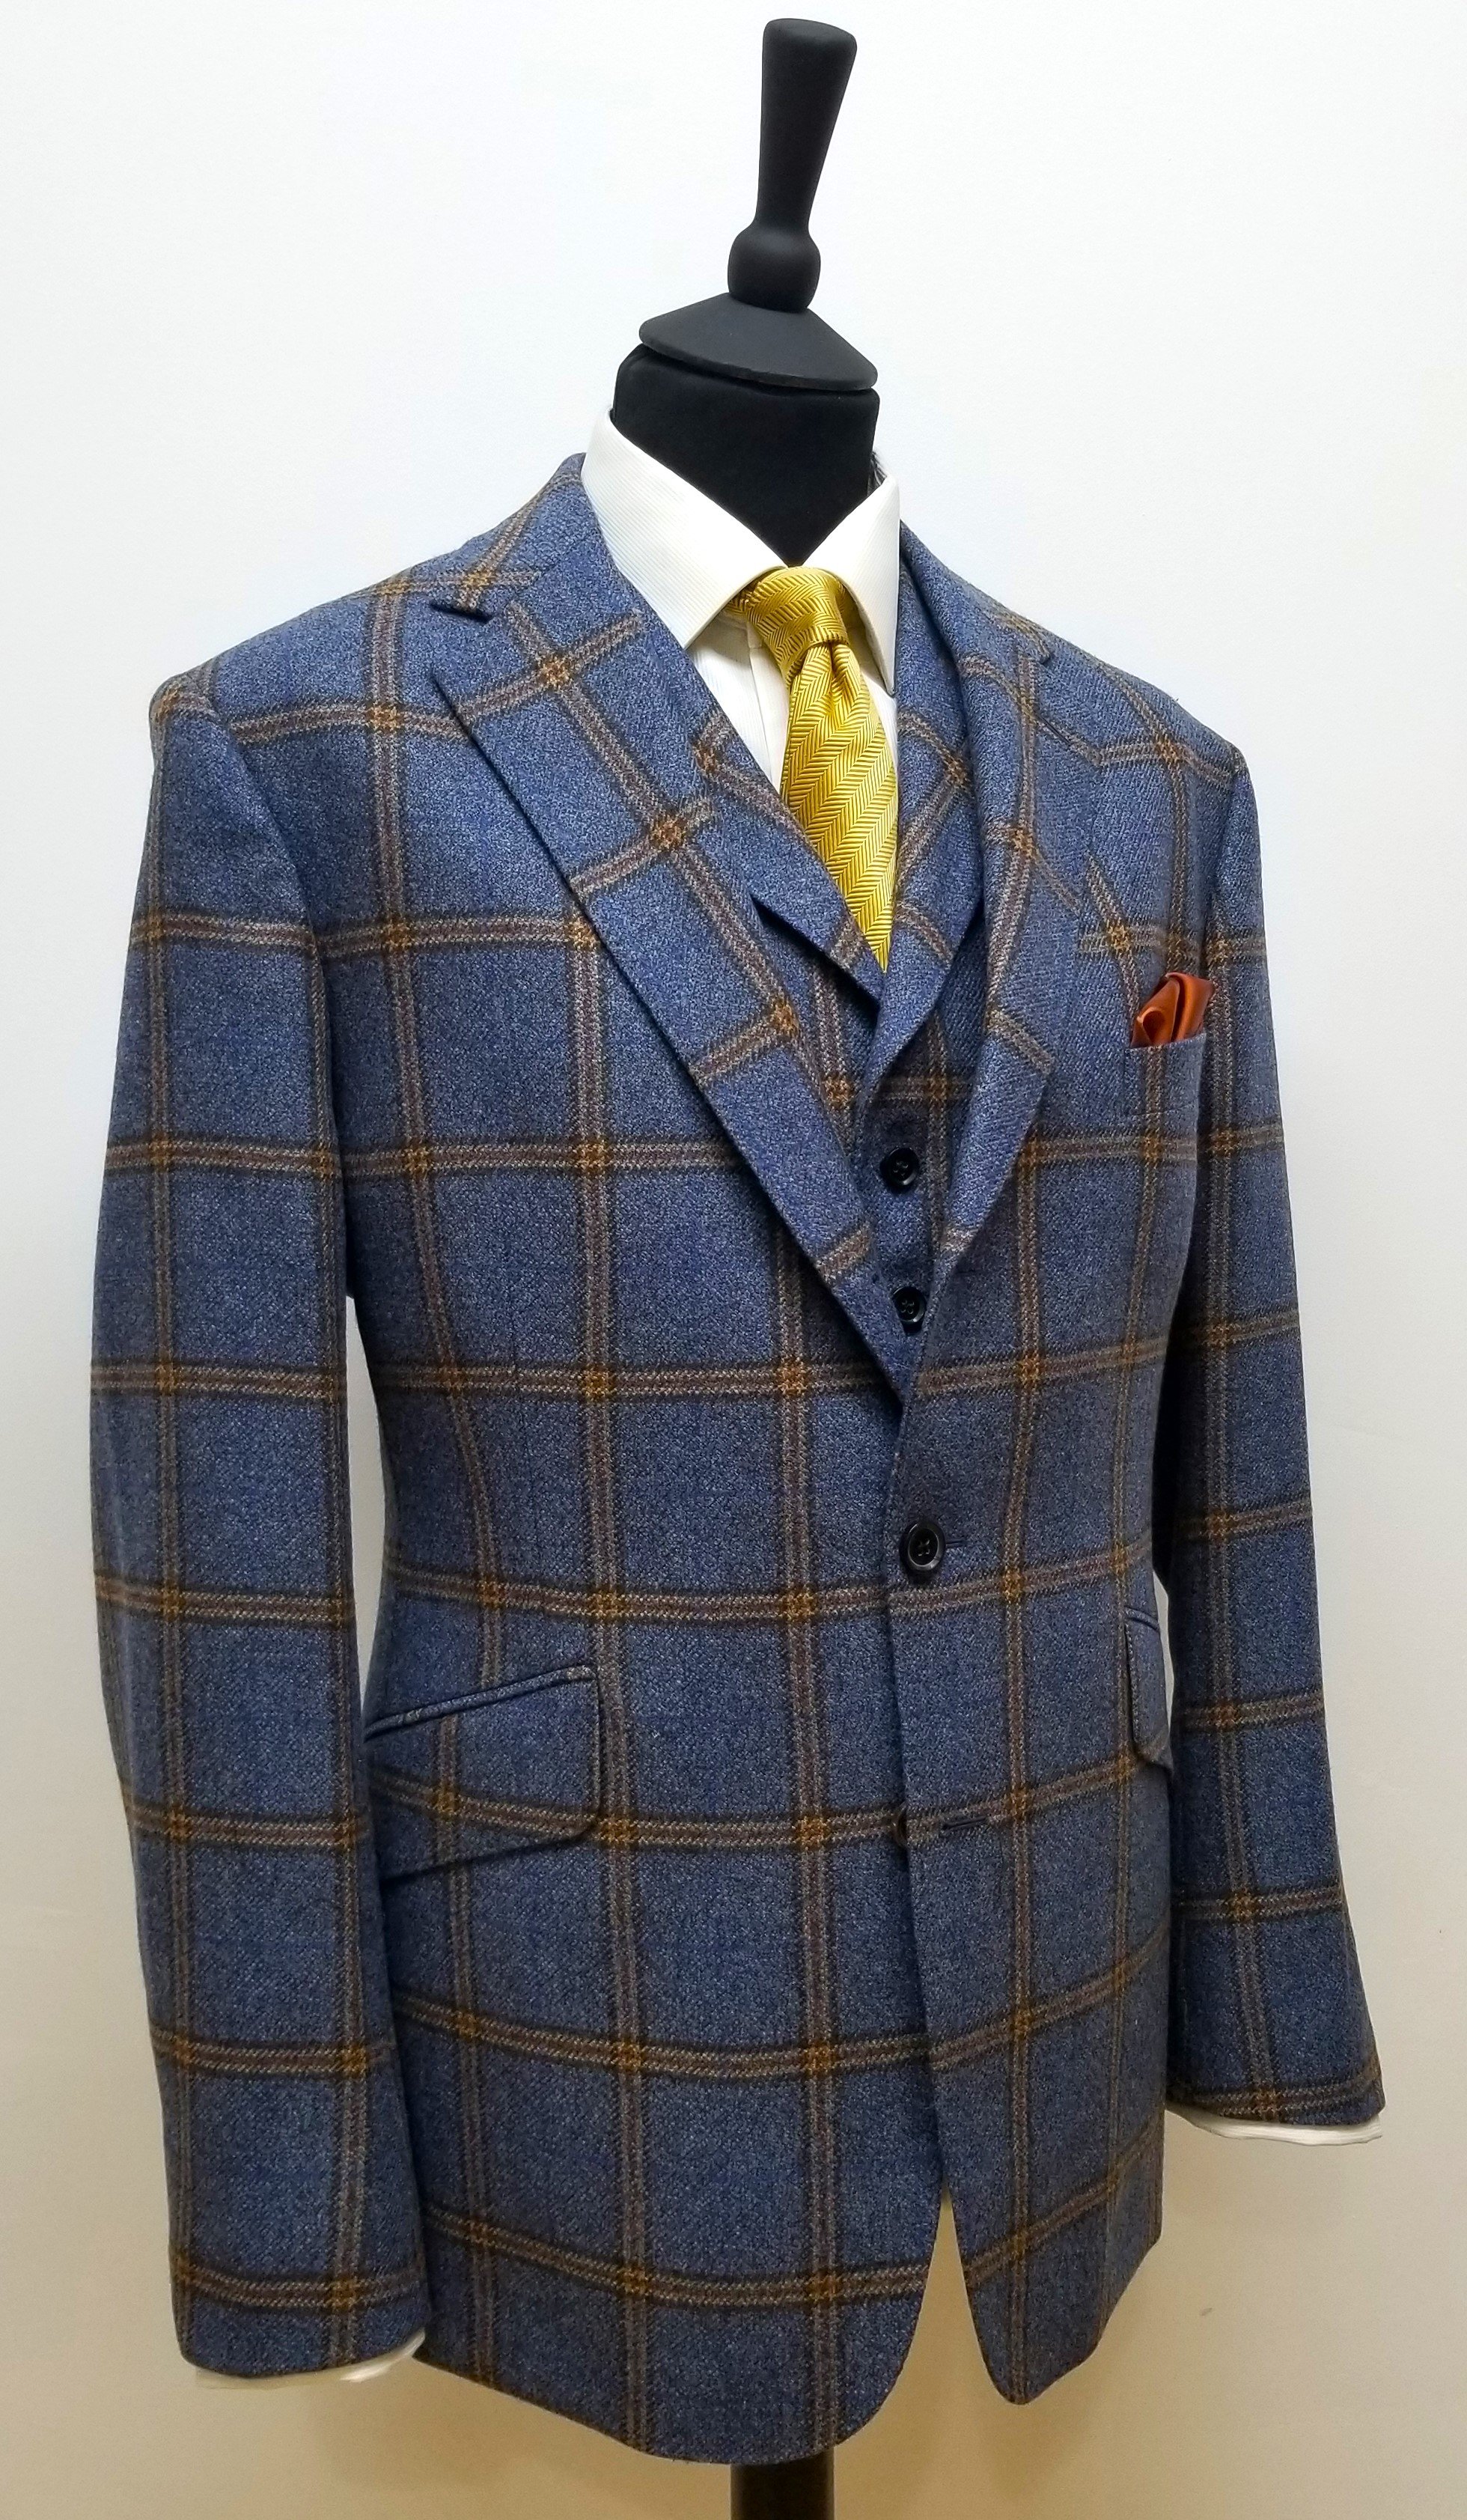 3 Piece suit in blue check tweed (7).jpg